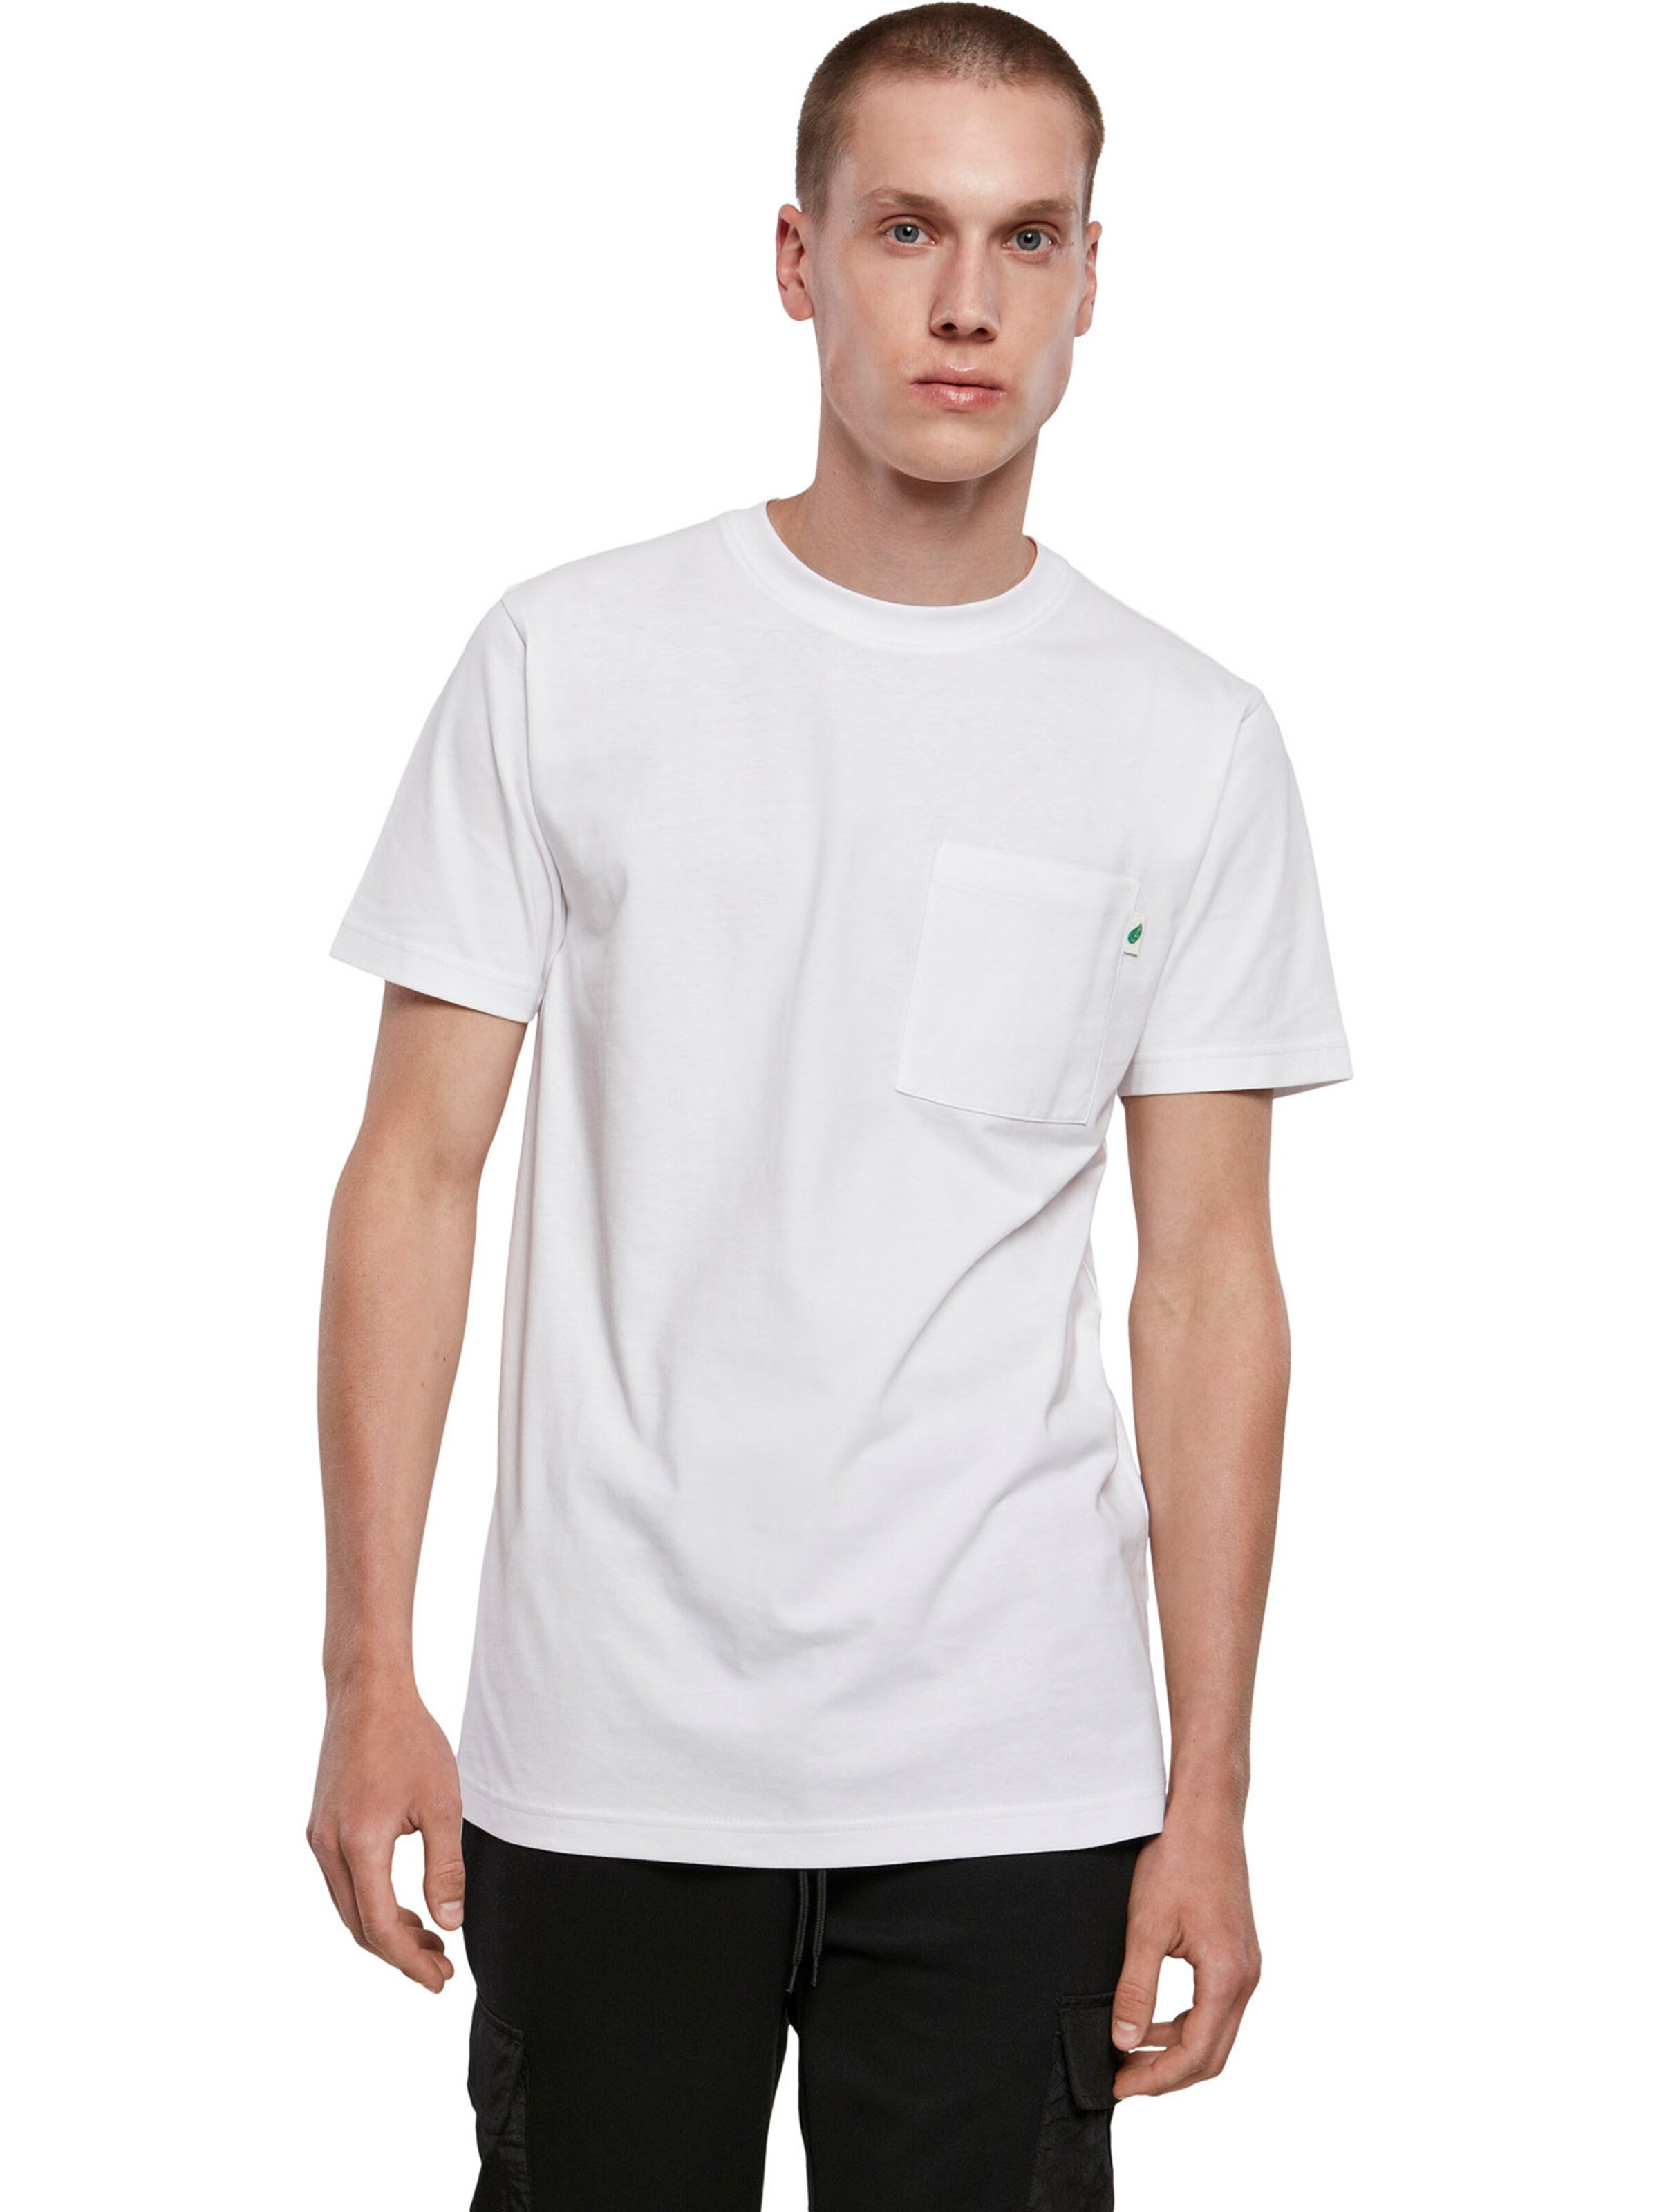 Männer Shirts Urban Classics T-Shirt in Weiß - JN71701